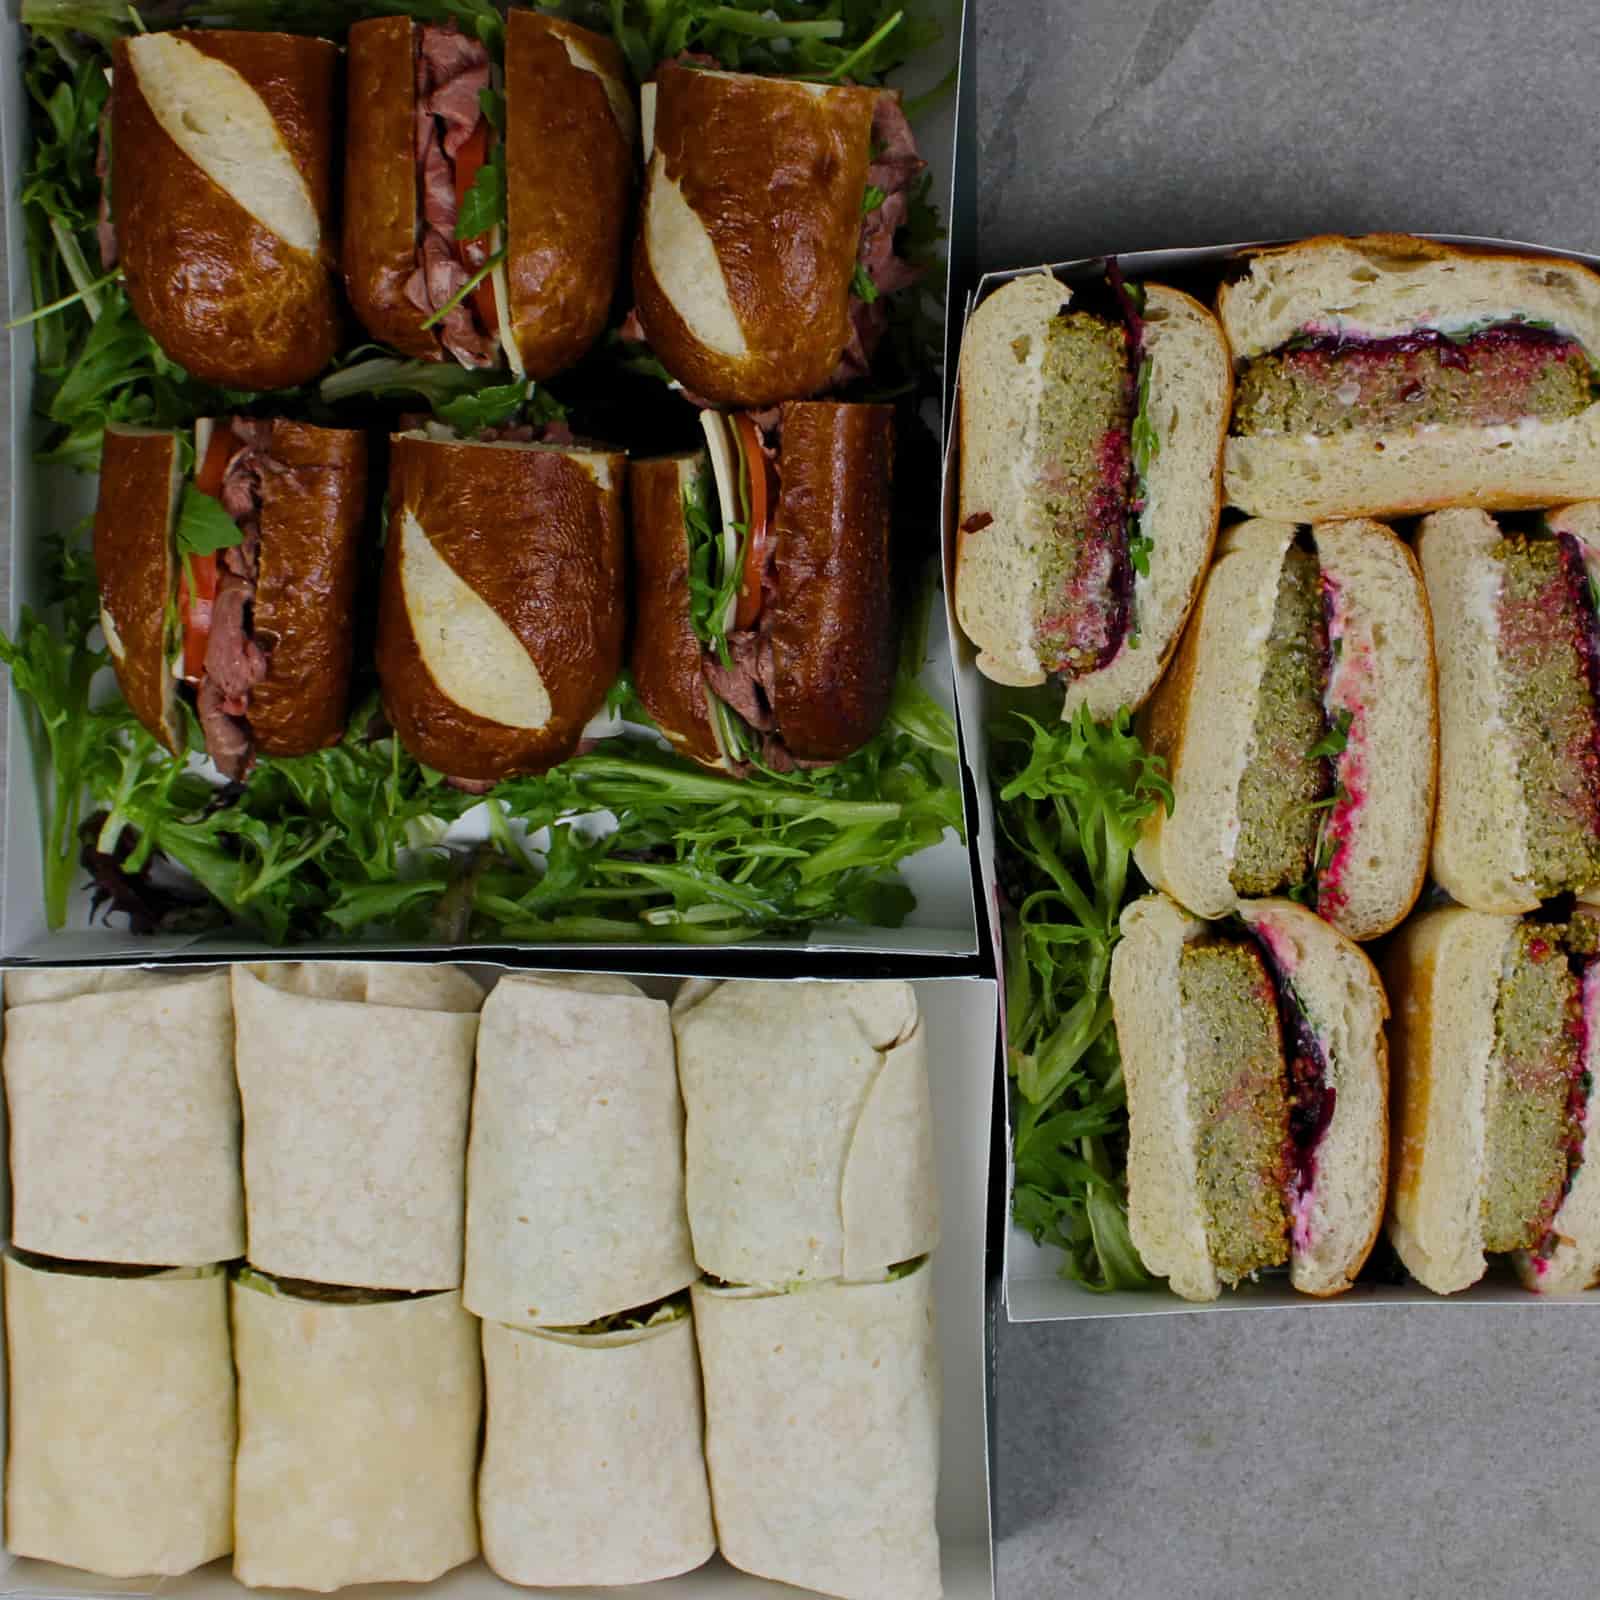 Buffet Sandwich platter RICARDO